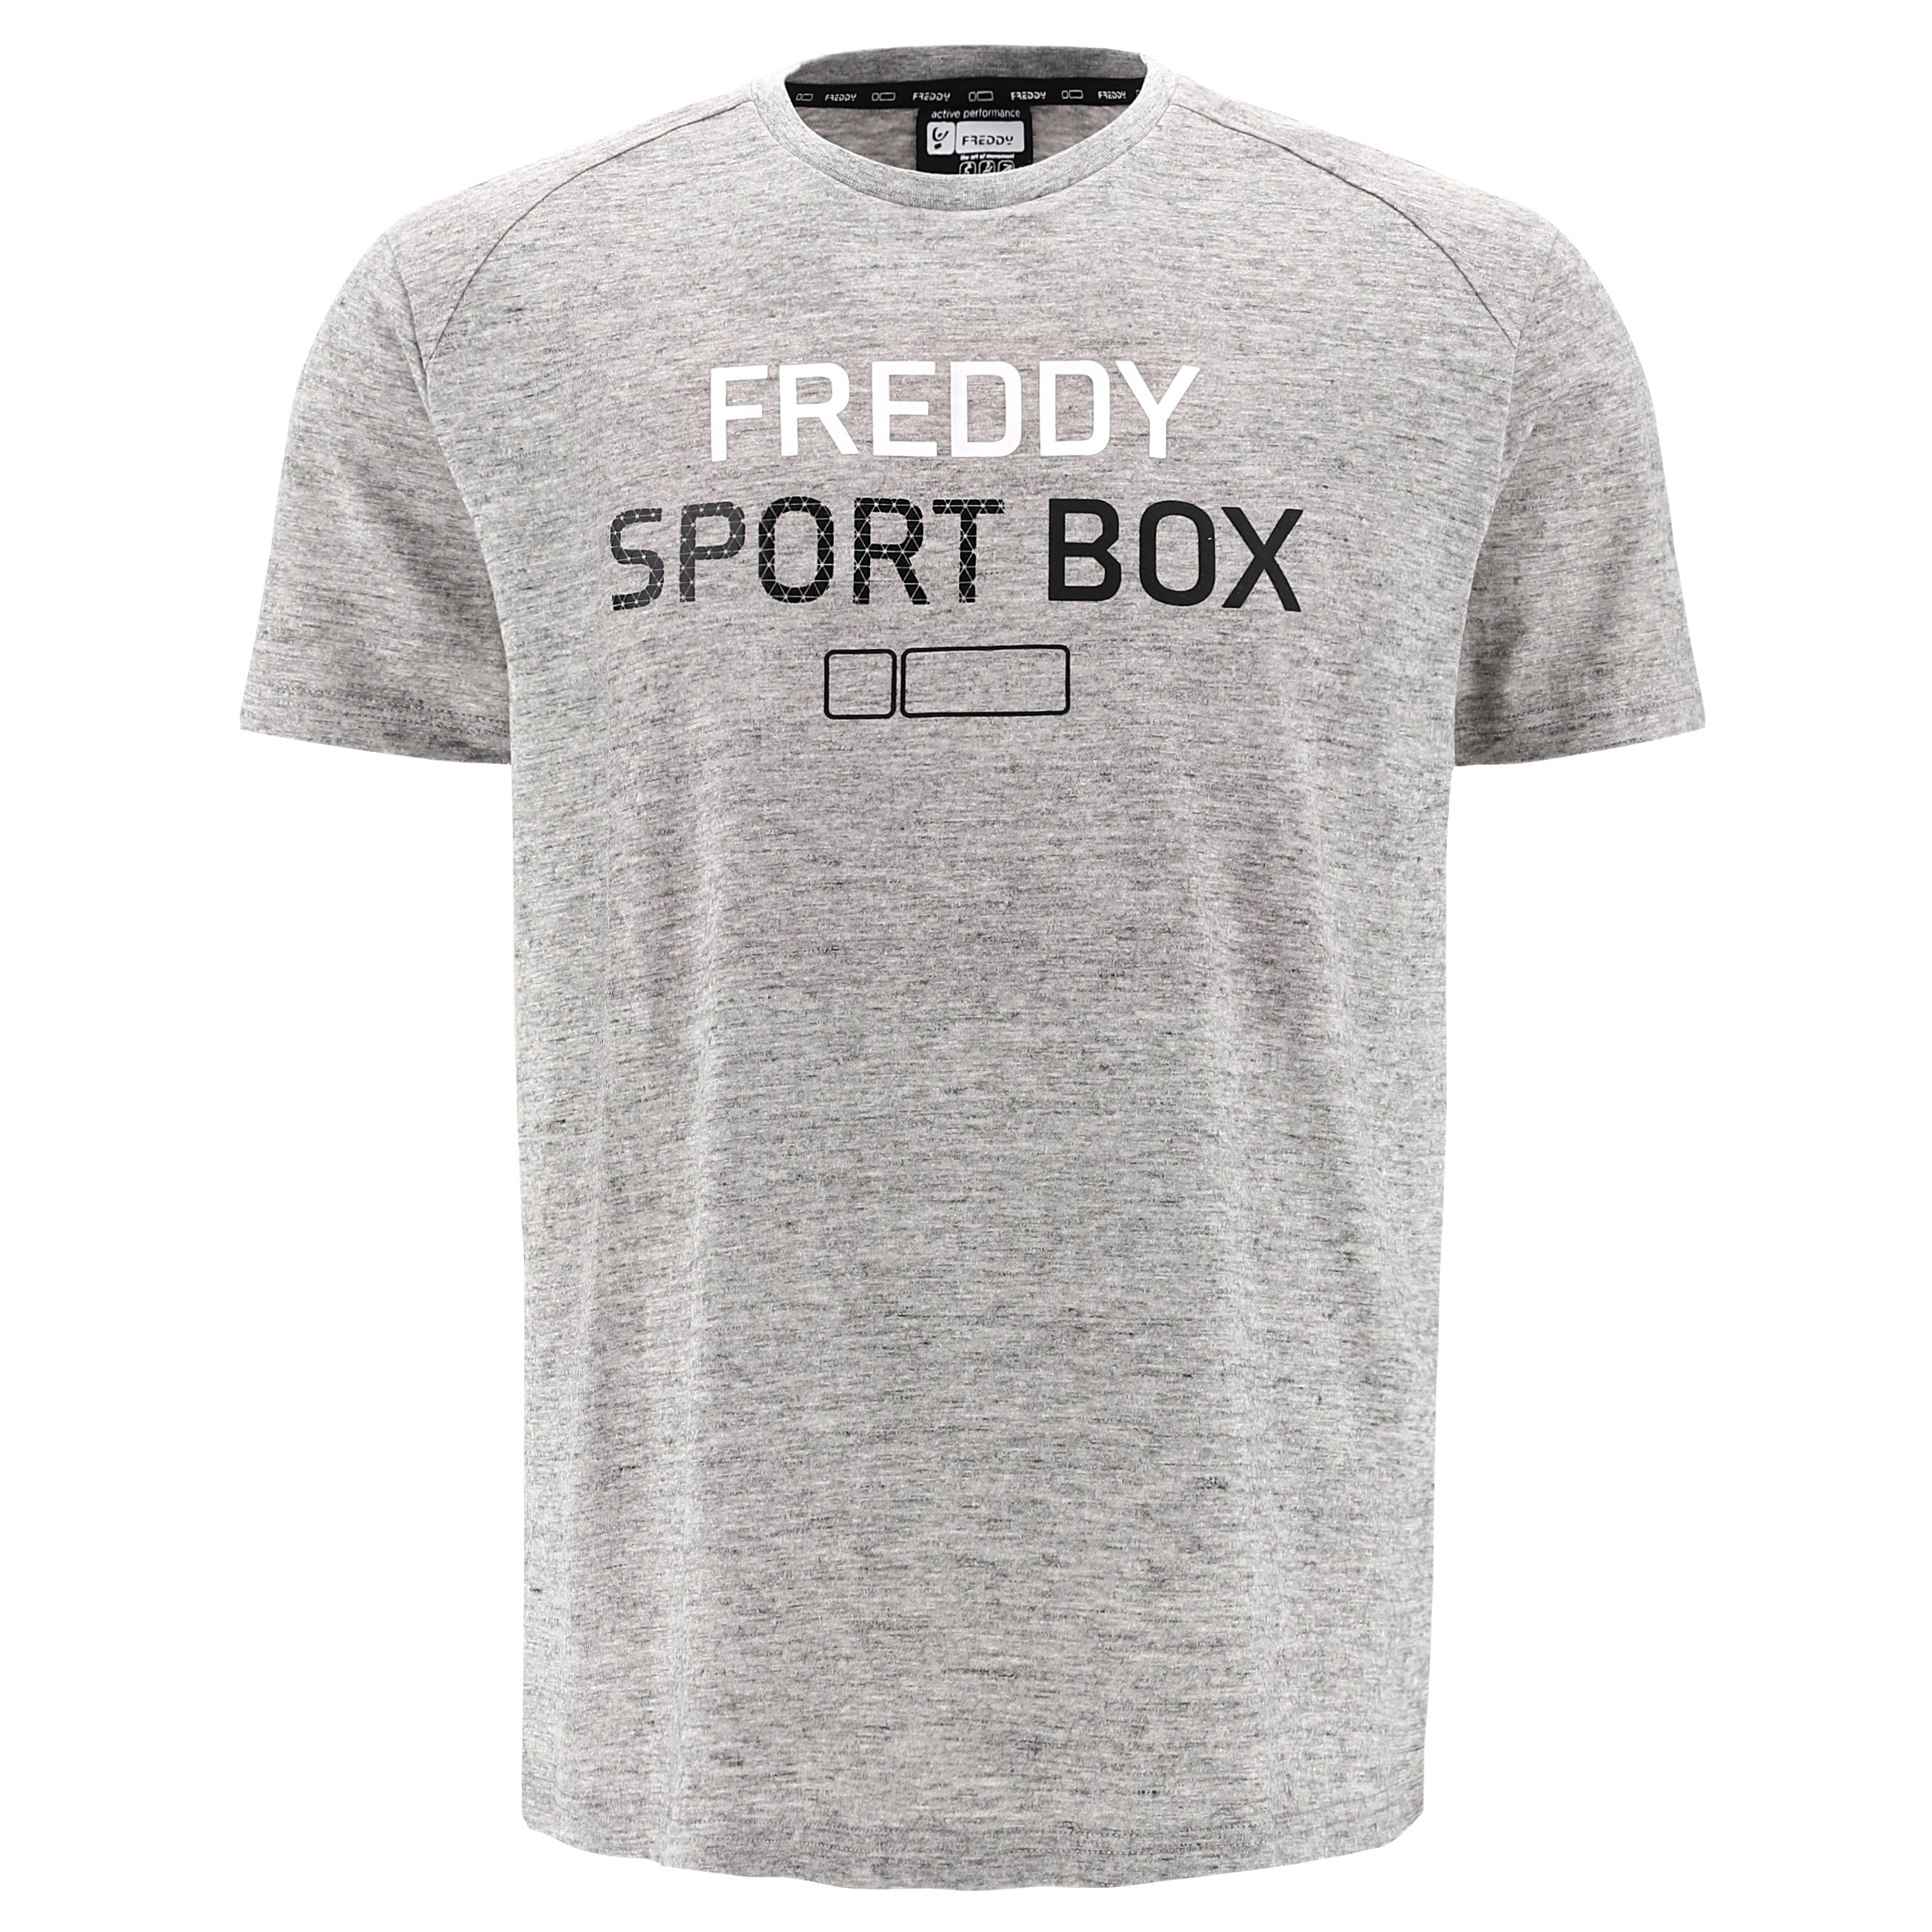 T-shirt grigio mélange con stampa FREDDY SPORT BOX e No Logo